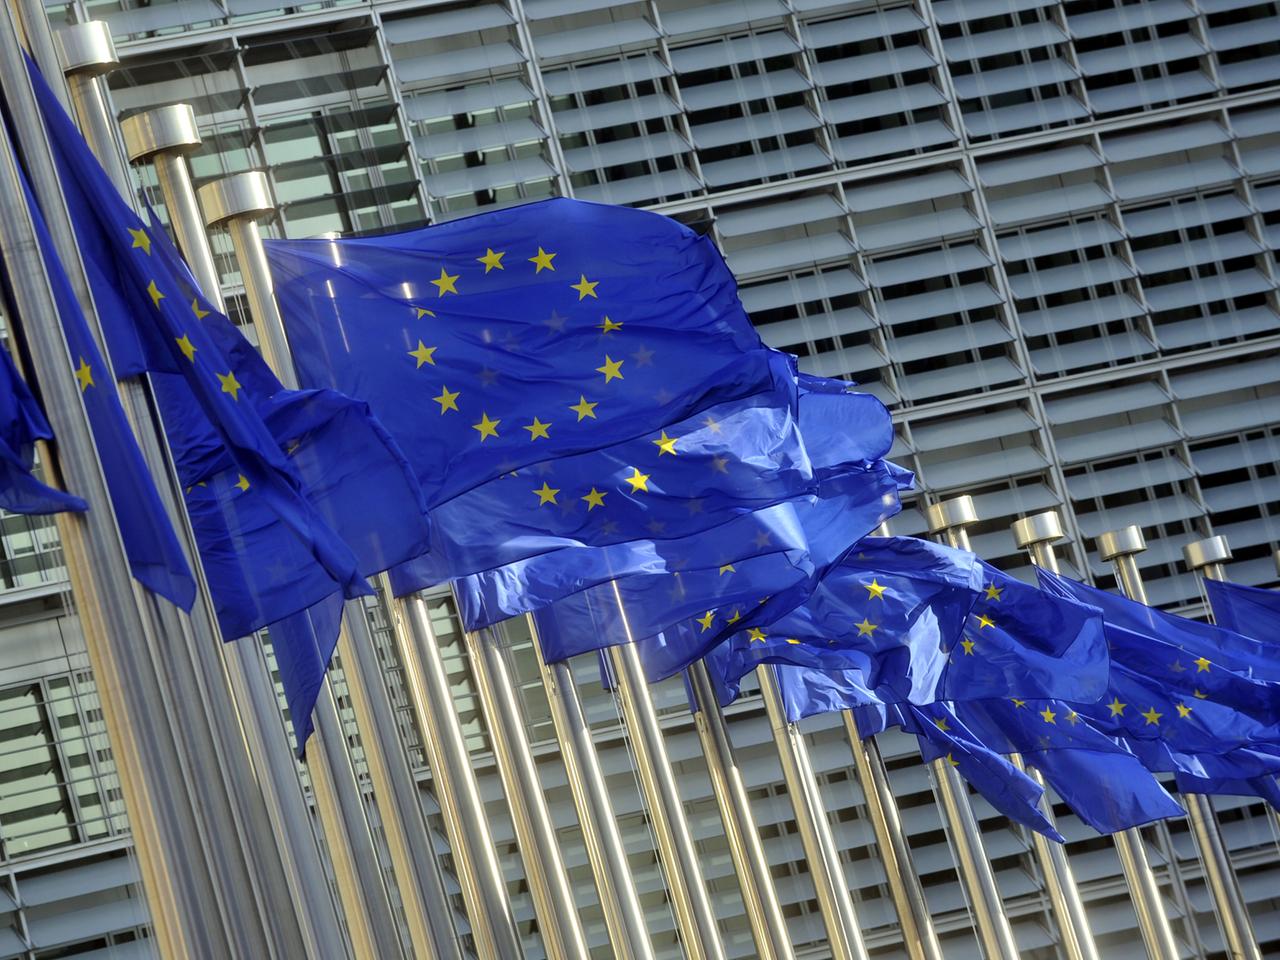 Flaggen der Europäischen Union vor dem Gebäude der Europäischen Kommission in Brüssel, Belgien (14.5.2012)